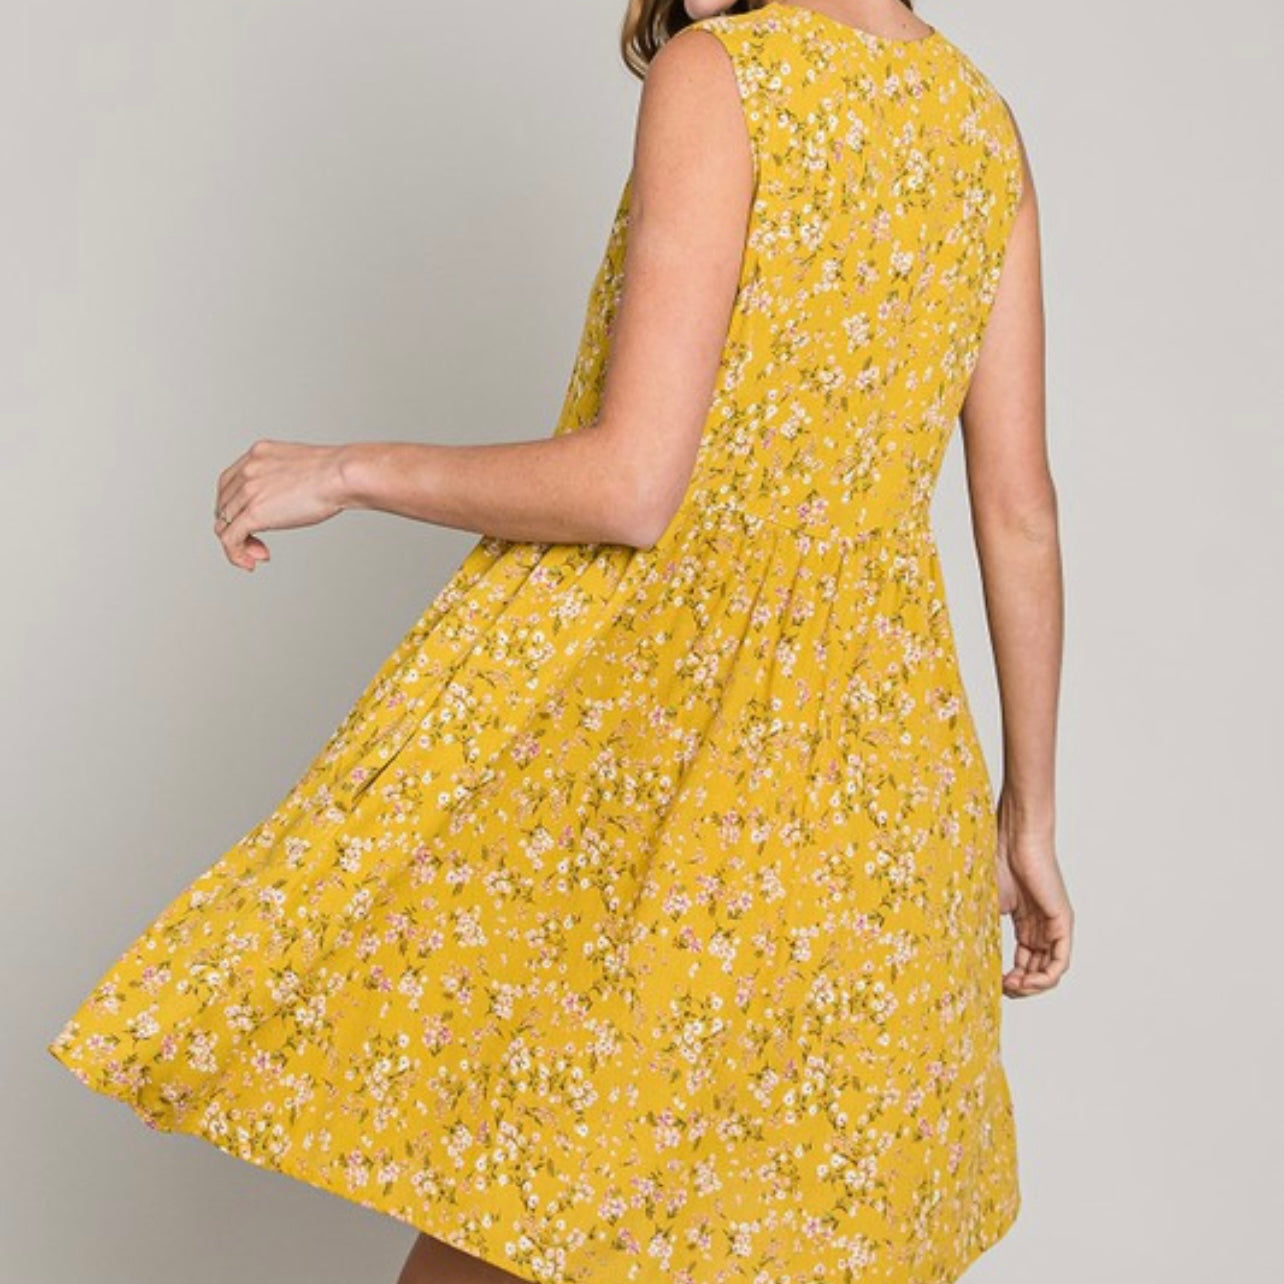 Sunshine Floral Dress